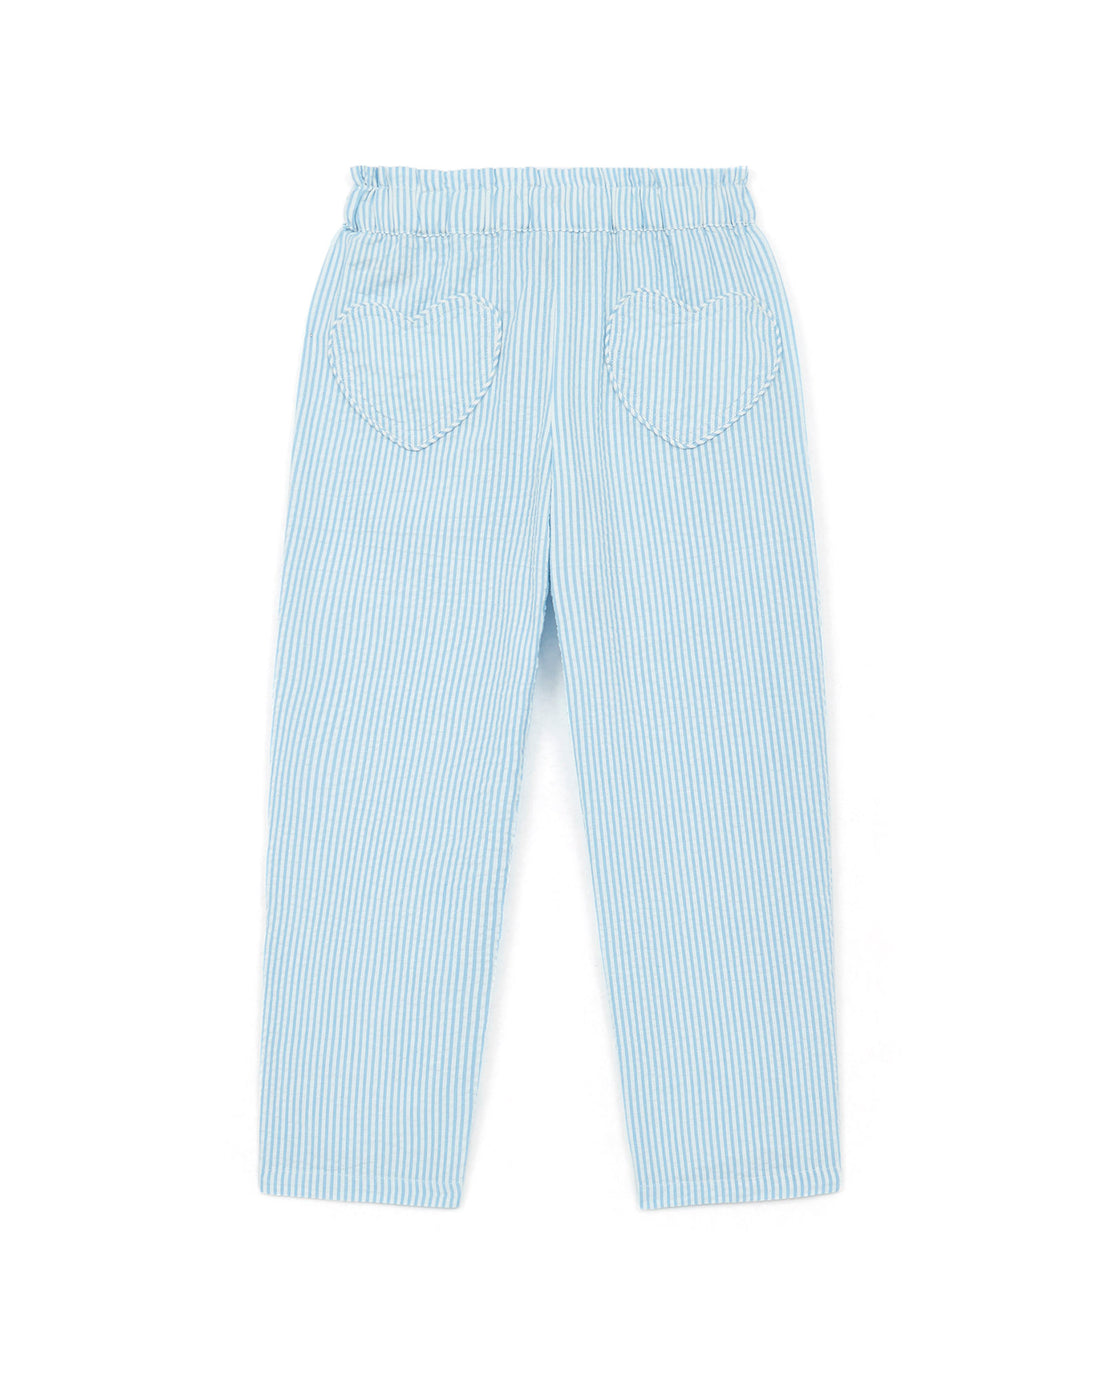 Bonton - light pants - blue stripes